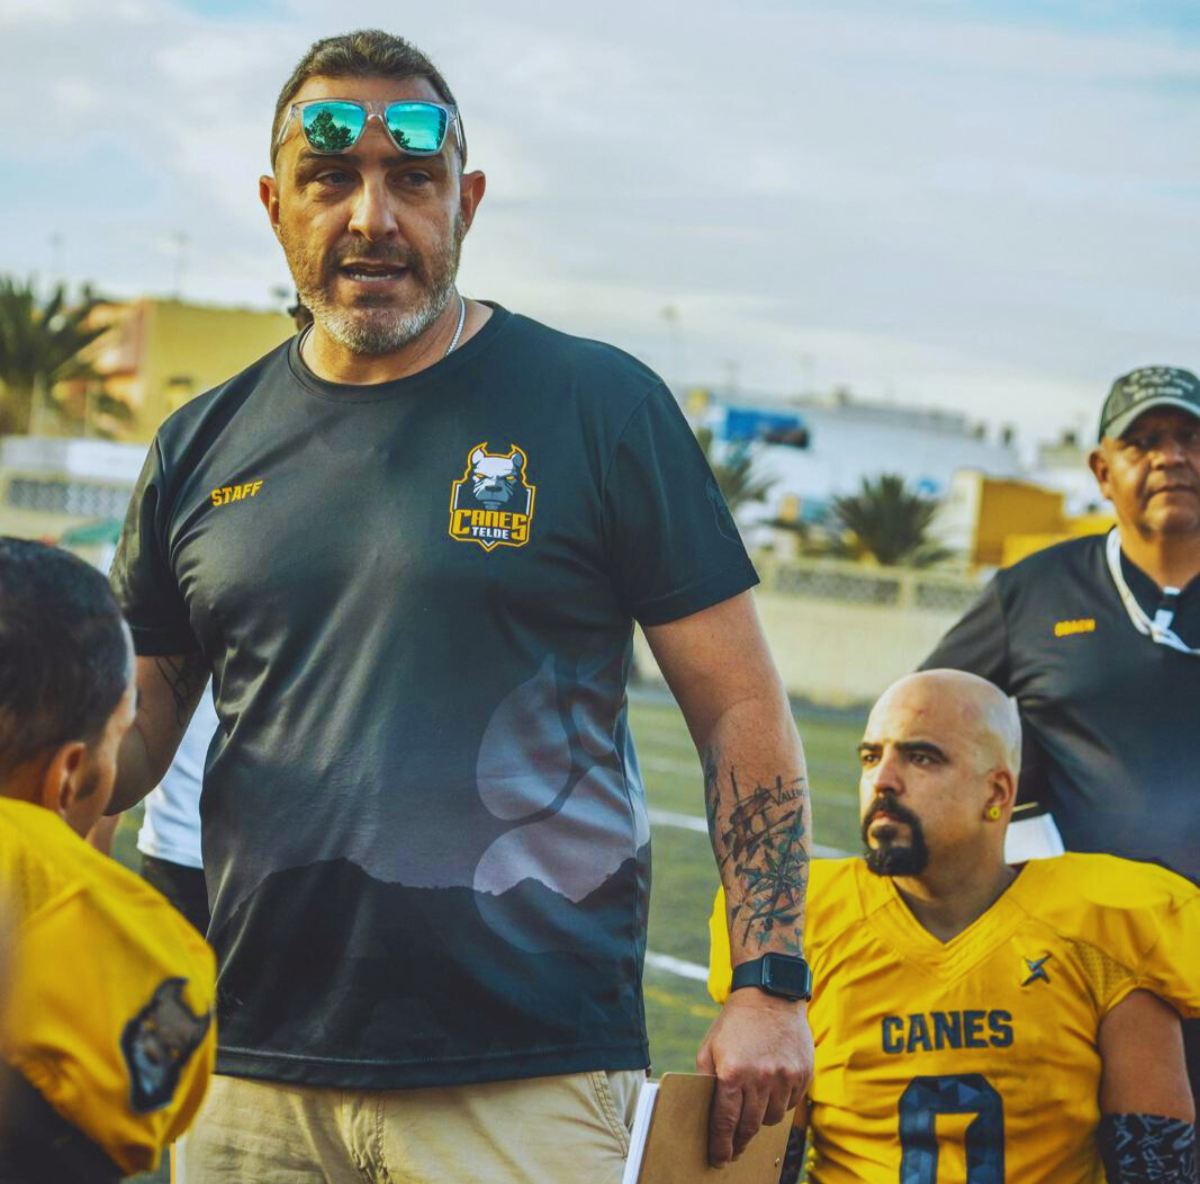 Nacho Pellicer es el director deportivo de Telde Canes, único equipo canario con representación a nivel nacional.